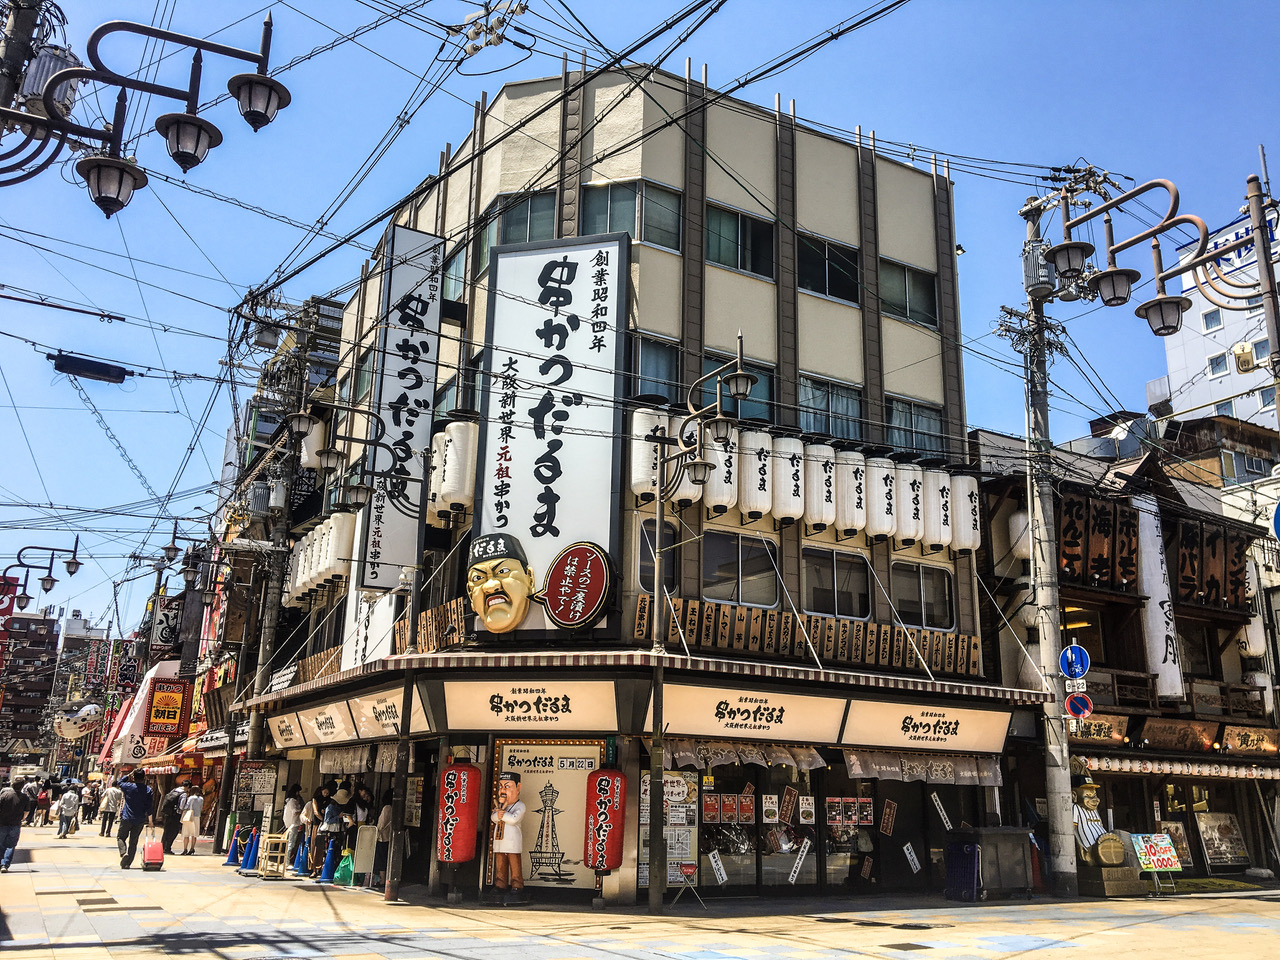 Visiter Shinsekai à Osaka lors d'un itinéraire de 2 semaines au Japon